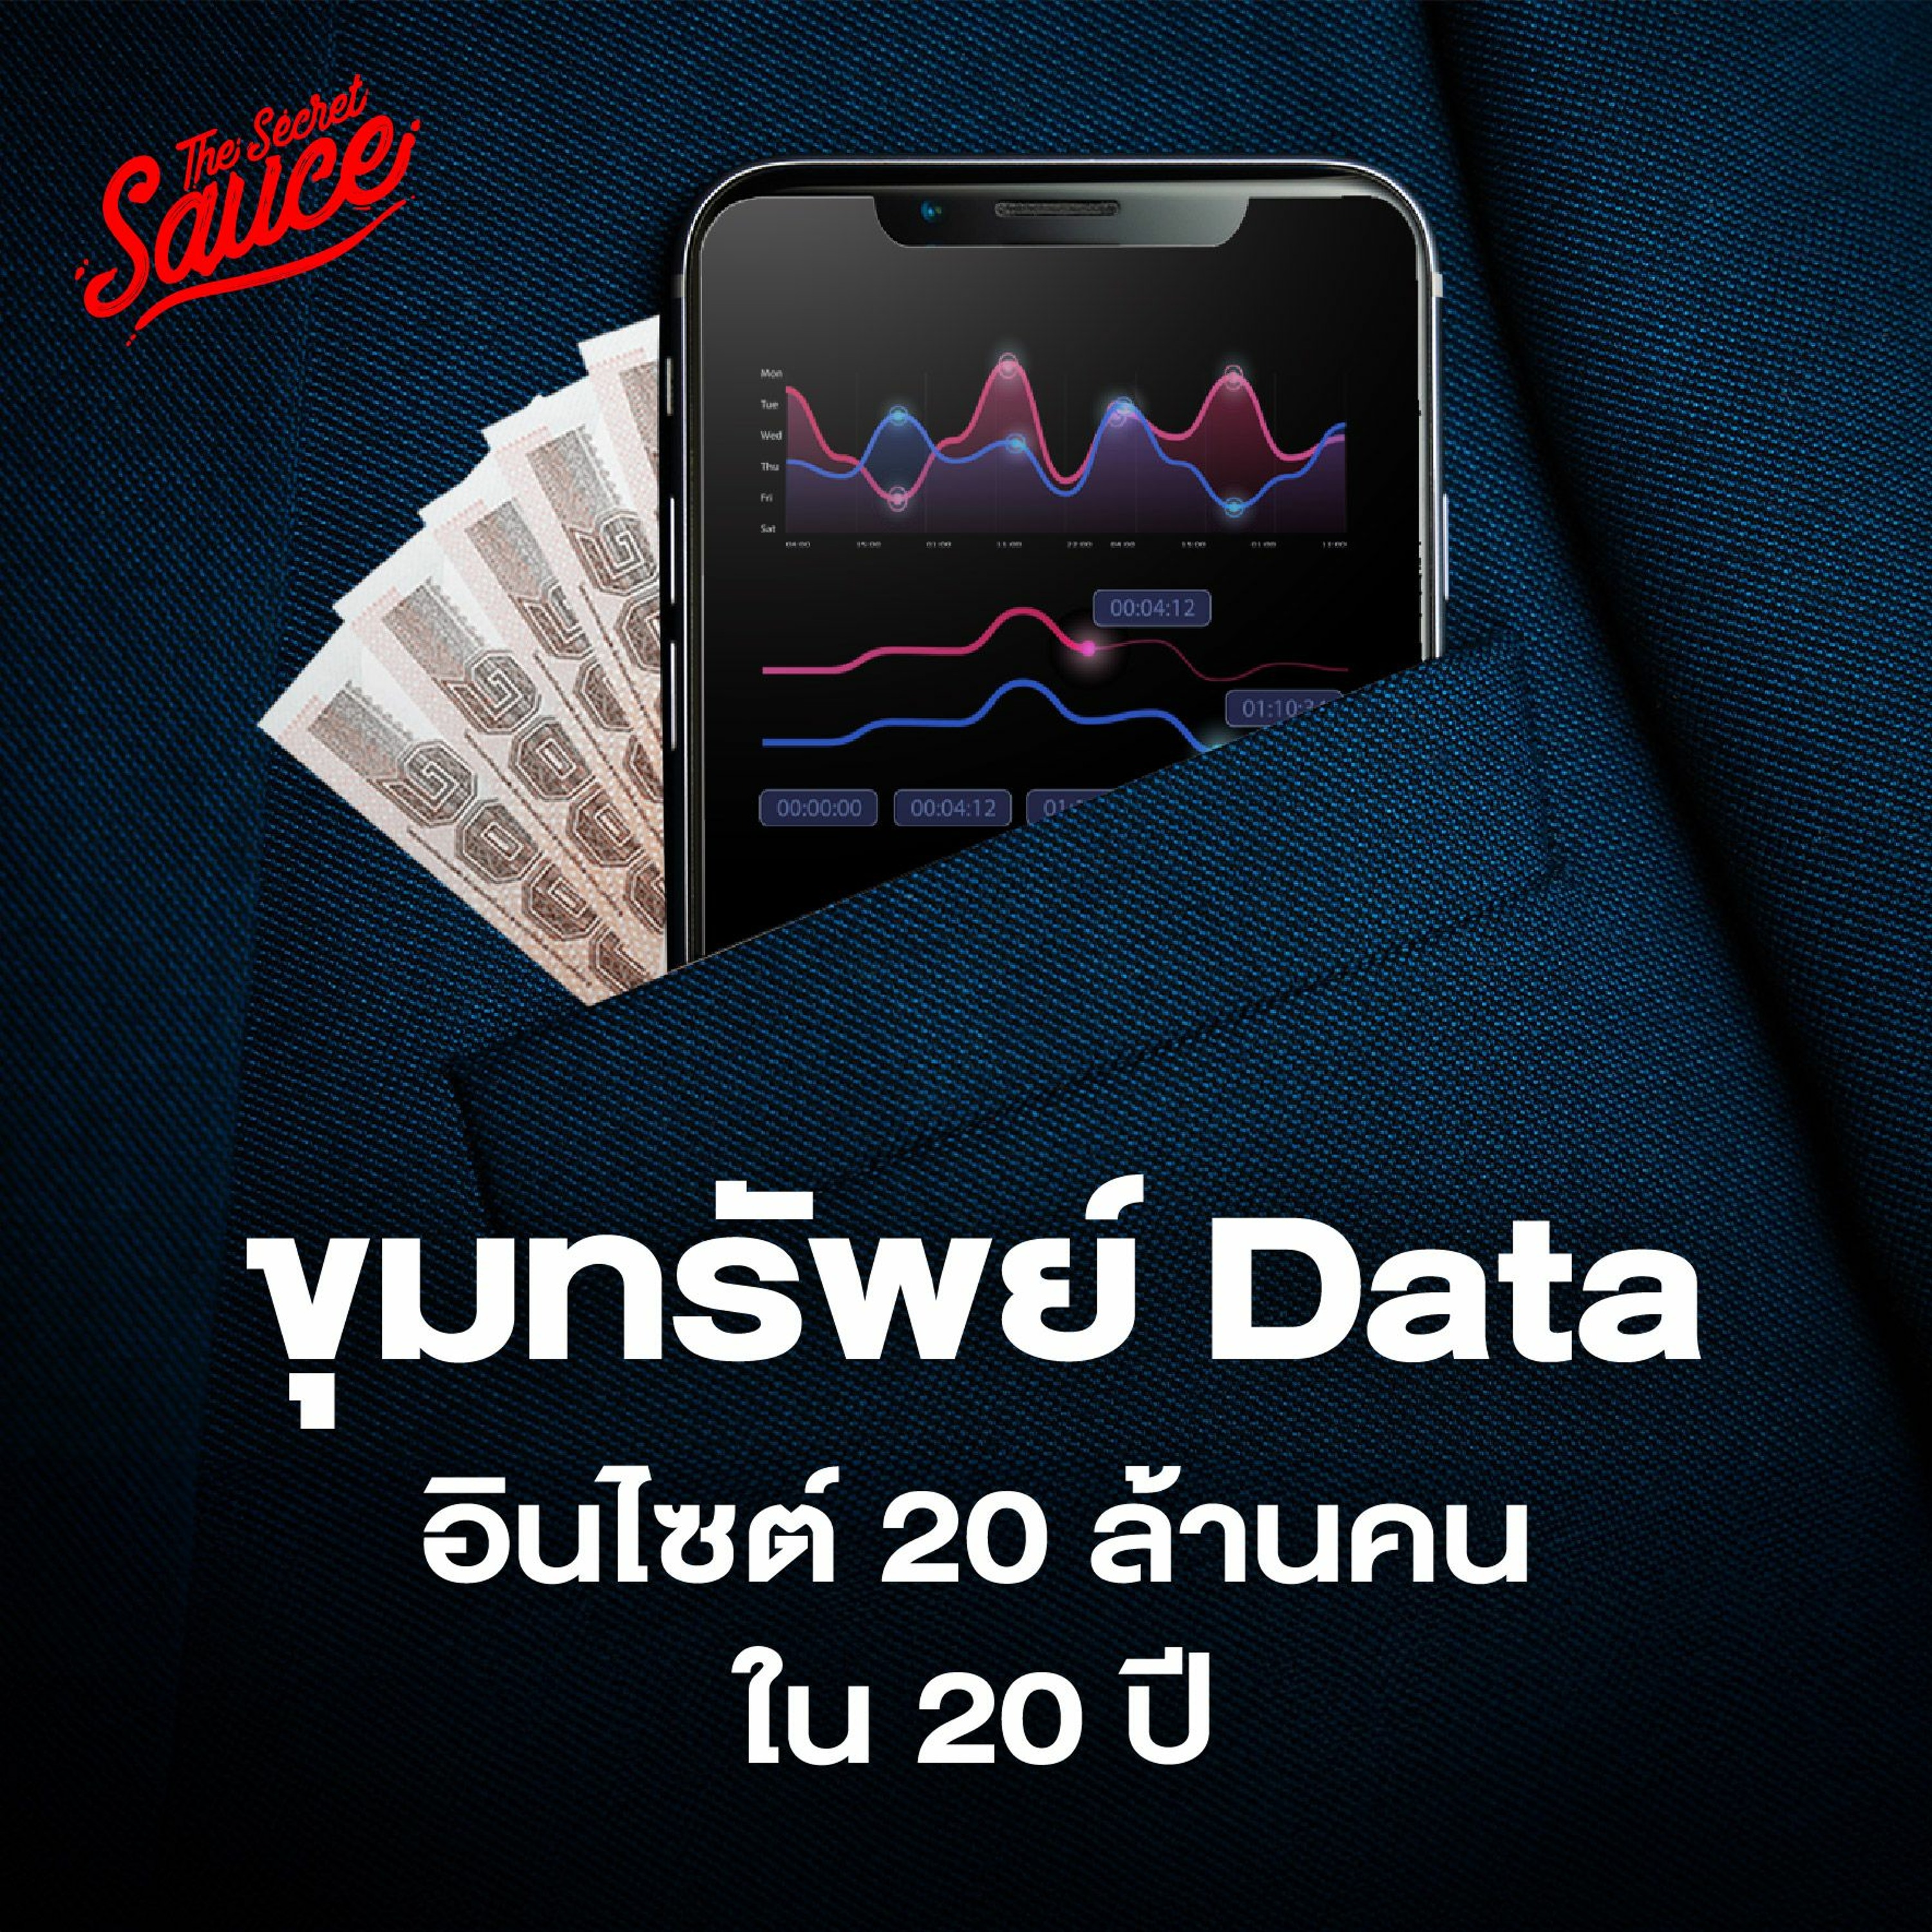 The Secret Sauce EP.713 เซ็นทรัลพัฒนา เผยพฤติกรรมการซื้อคนไทย 20 ล้านคนใน 20 ปี มุ่งสู่ยุ�